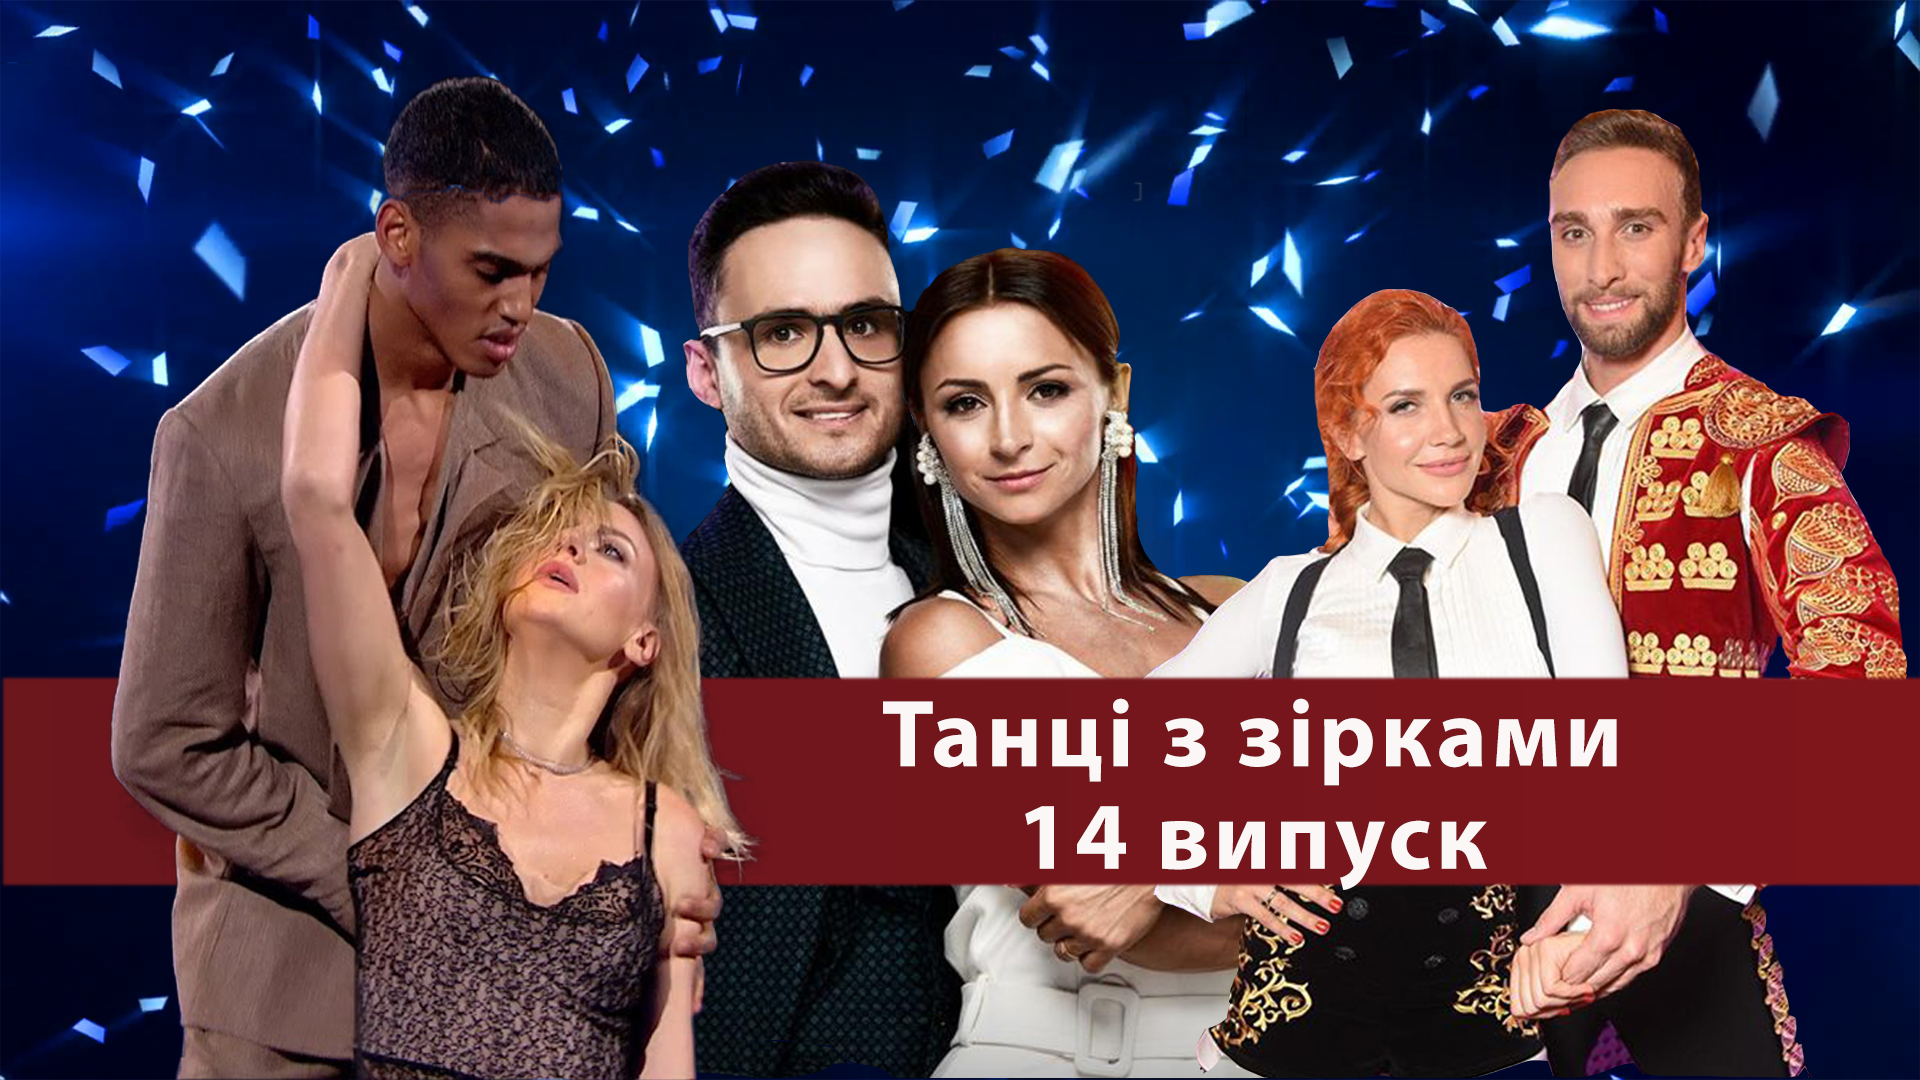 Танцы со звездами - 25.11.2018 - онлайн финал Танцы со звездами 2018 